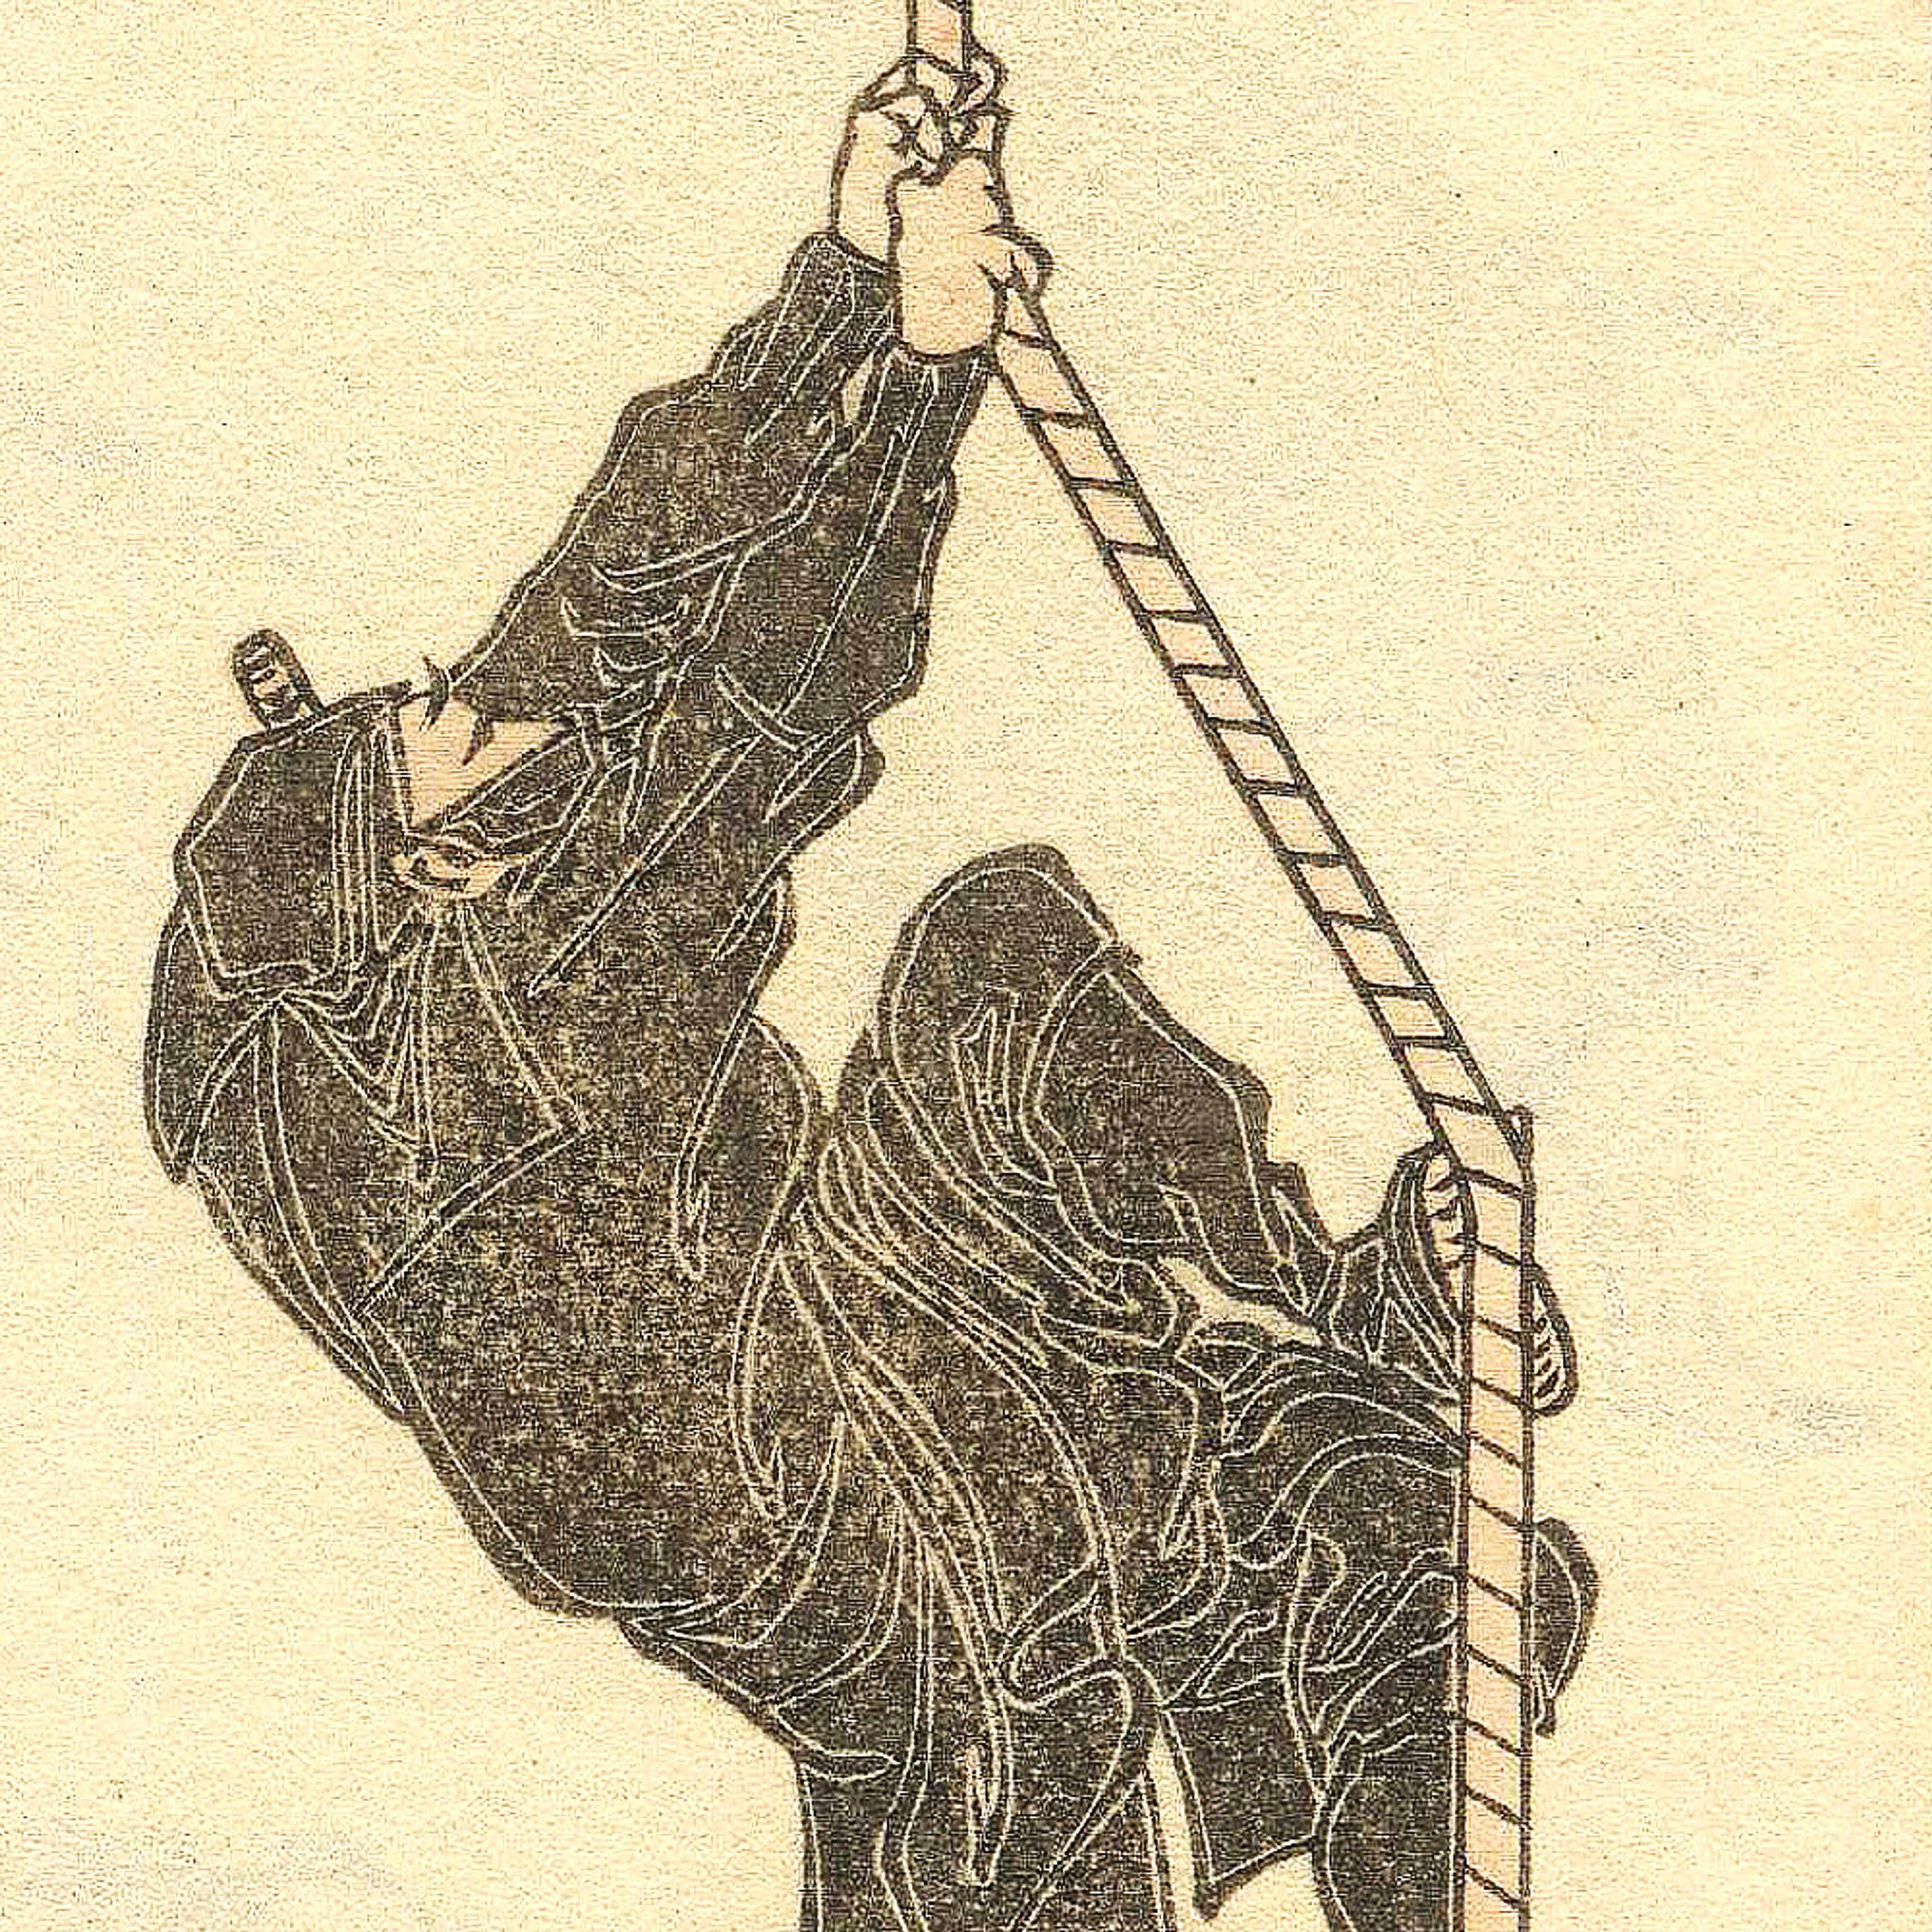 <p><em>Sketch by Hokusai/Wikimedia</em></p>